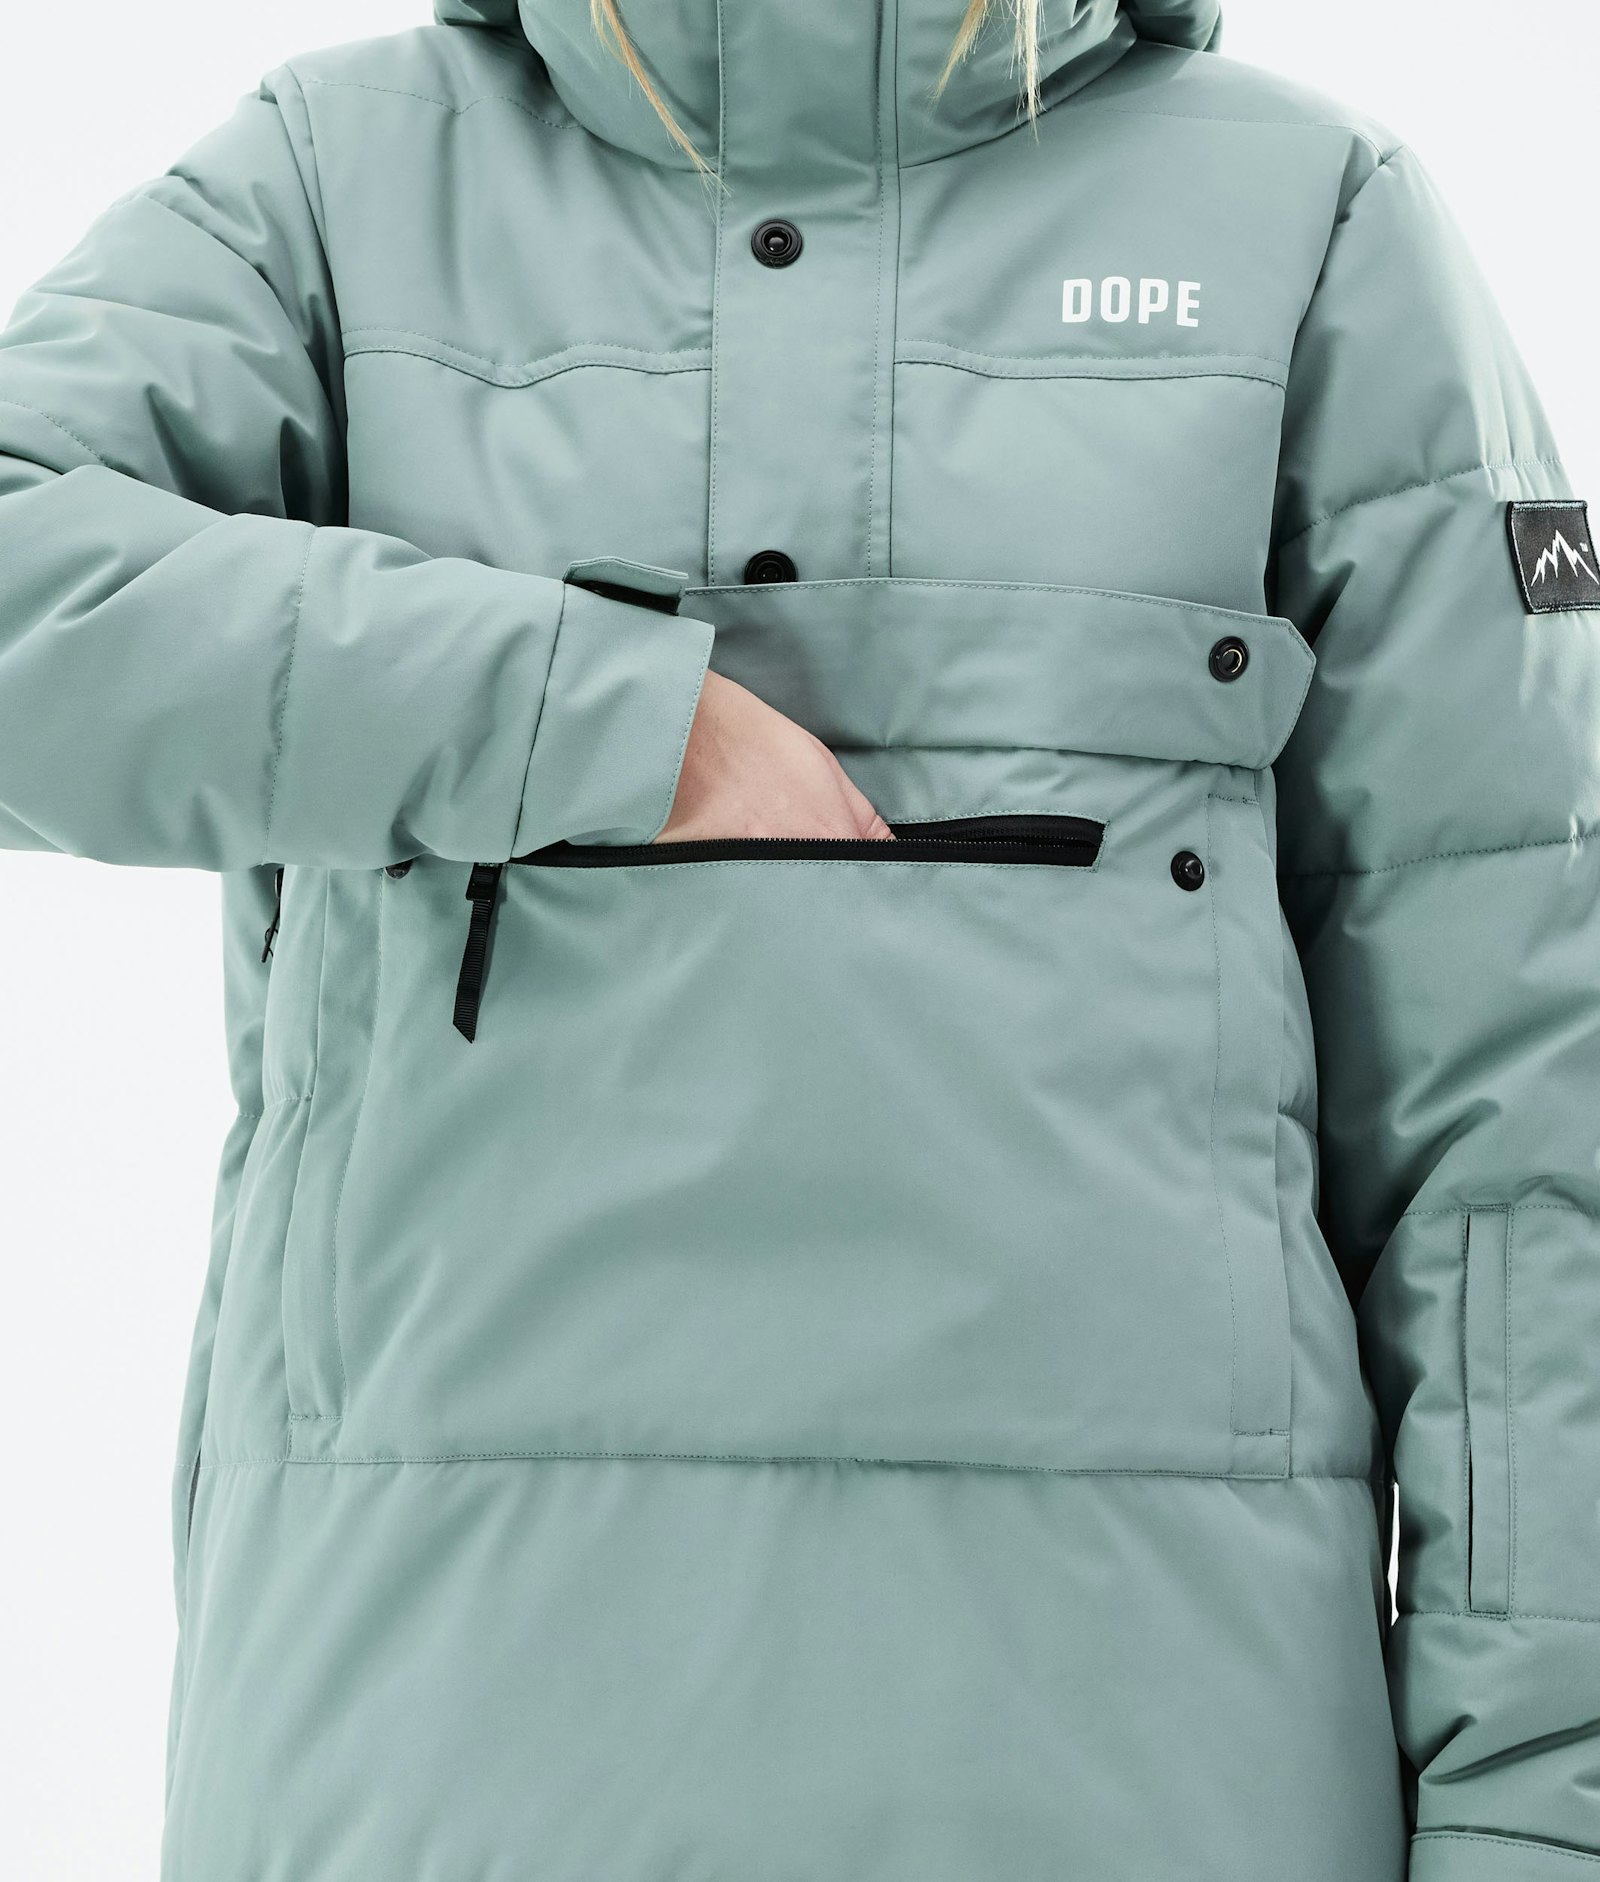 Puffer W 2021 Snowboard Jacket Women Faded Green